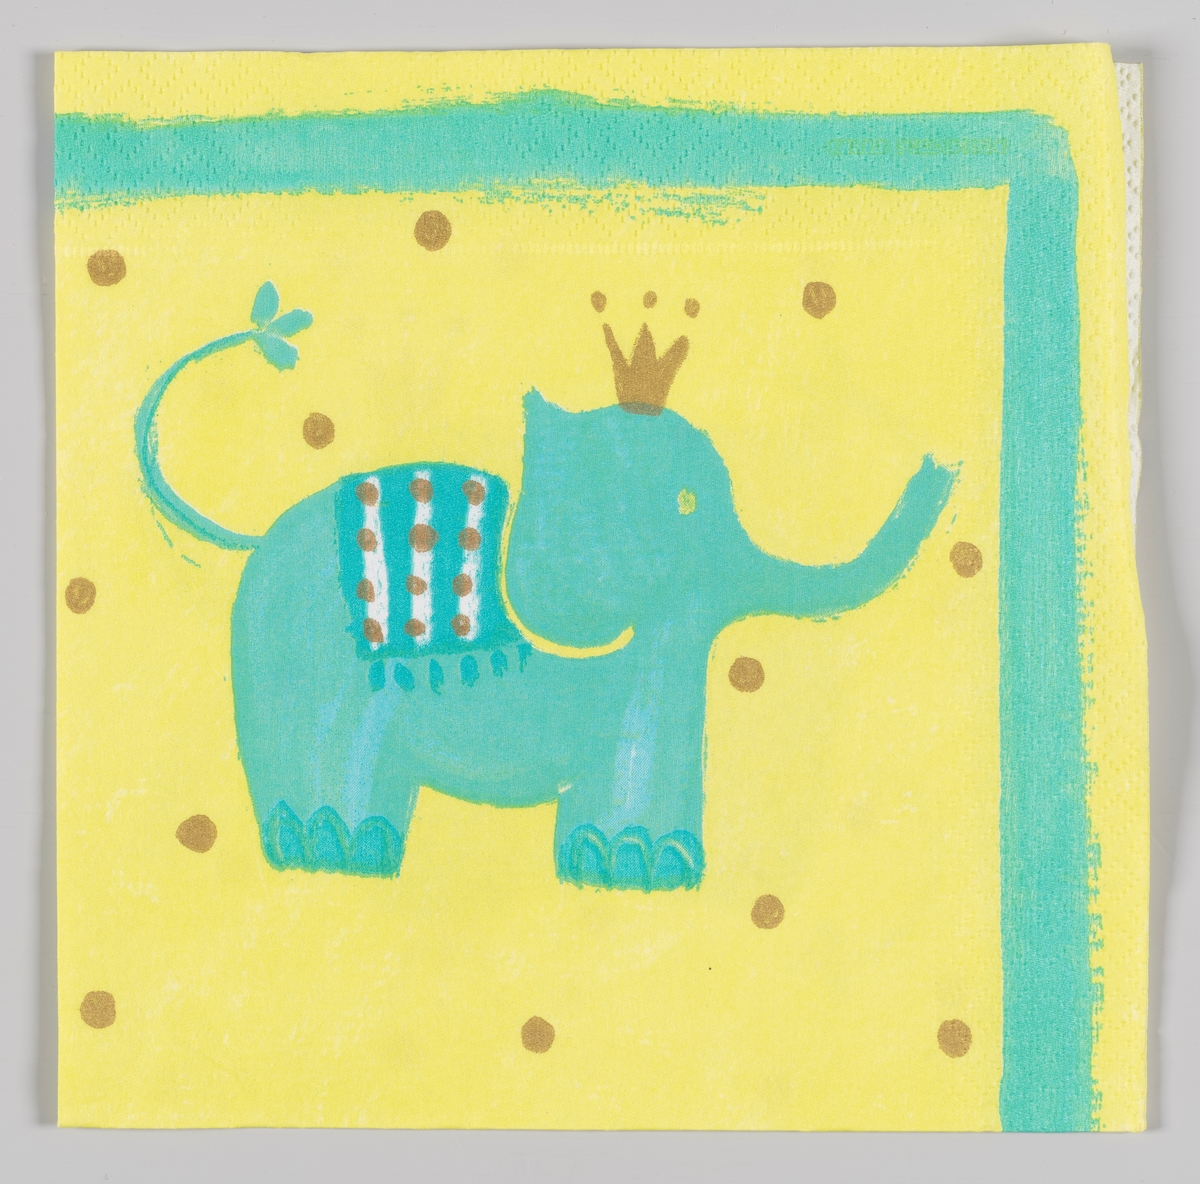 En lyseblå elefant med gullkrone på en gul bakgrunn med gullprikker

SAmme motiv som på MIA.00007-003-0137